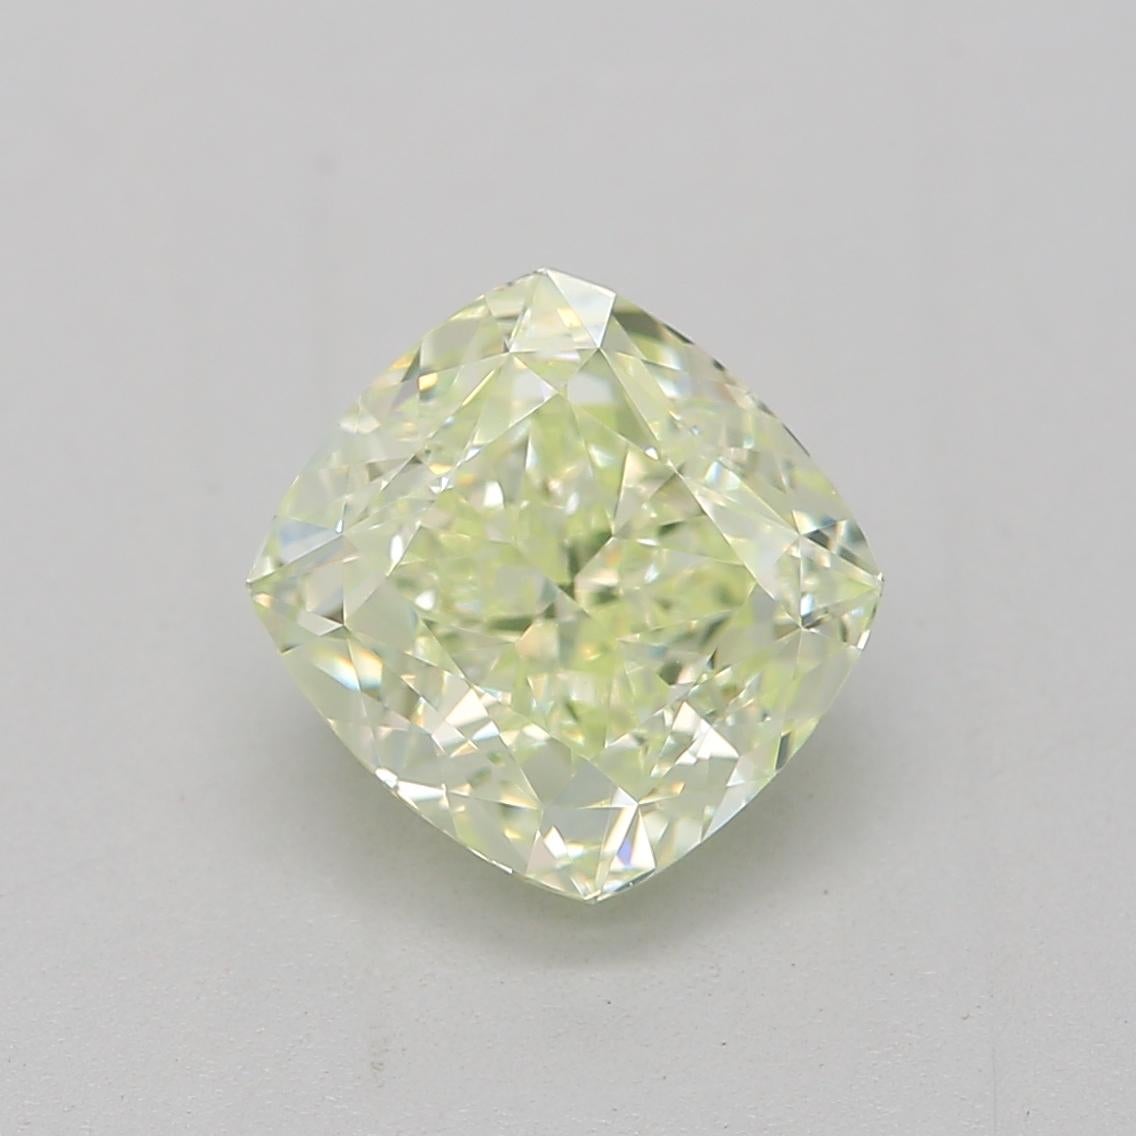 1.00 Carat Fancy Light Yellow Green Cushion cut diamond IF Clarity GIA Certified For Sale 1